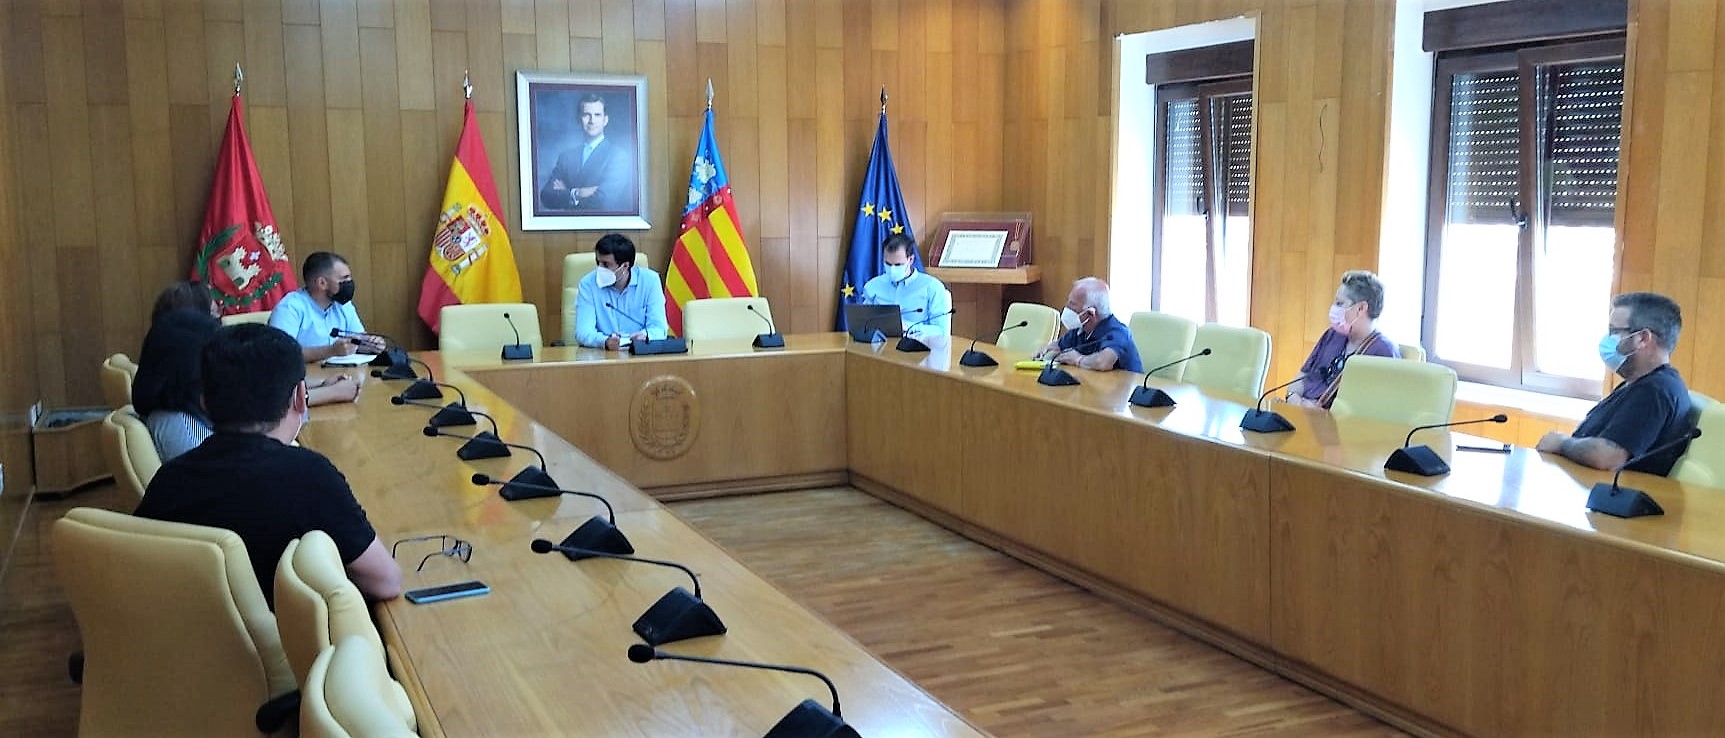 El Ayuntamiento de Elda y la Generalitat avanzan de manera coordinada para resolver los problemas de vivienda en la ciudad